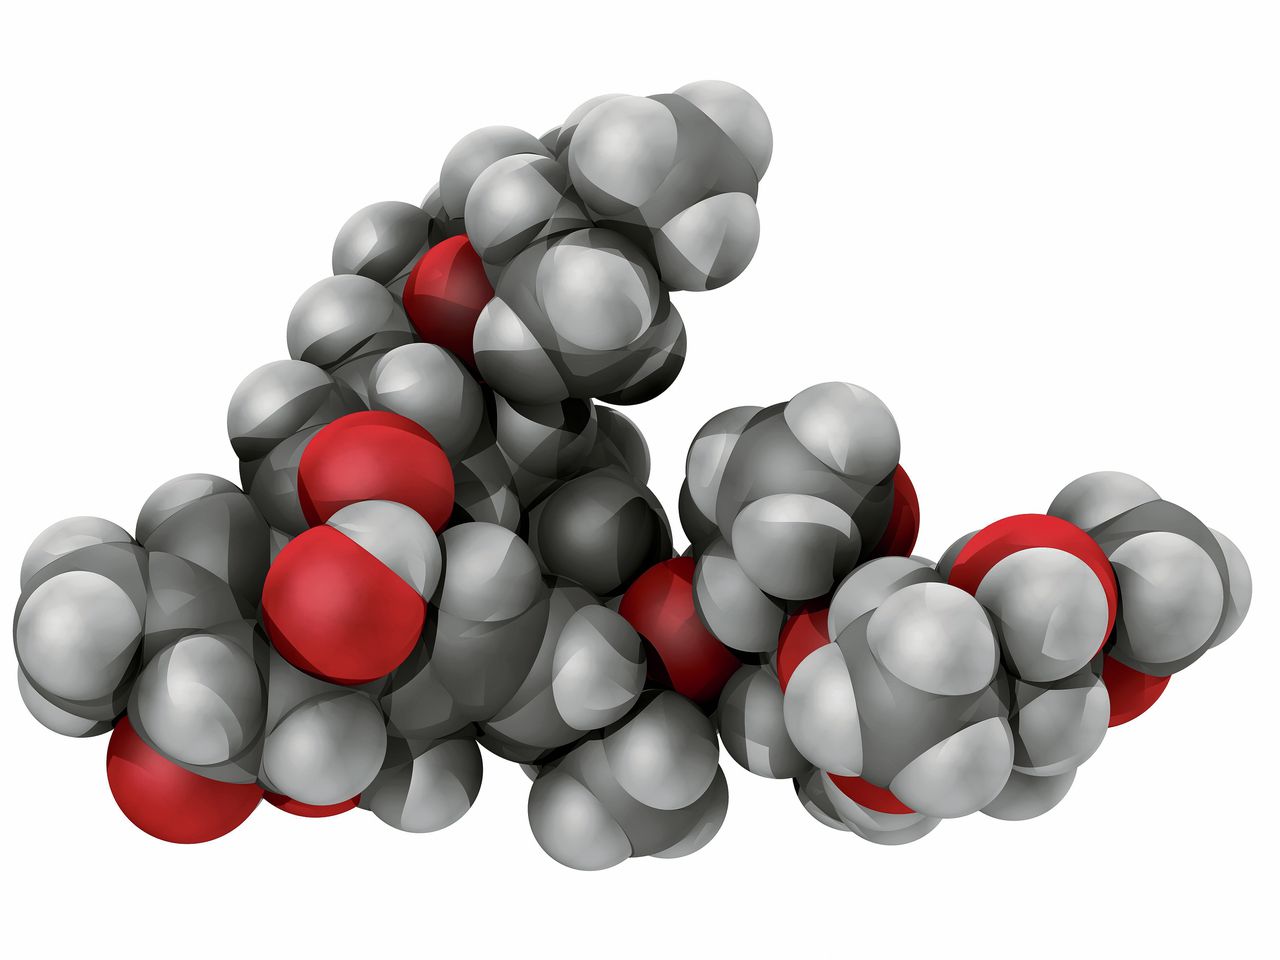 Molecuulmodel van het ontwormingsmiddel ivermectine. De kleurcodes voor de atomen zijn: koolstof grijs, waterstof wit, zuurstof rood.